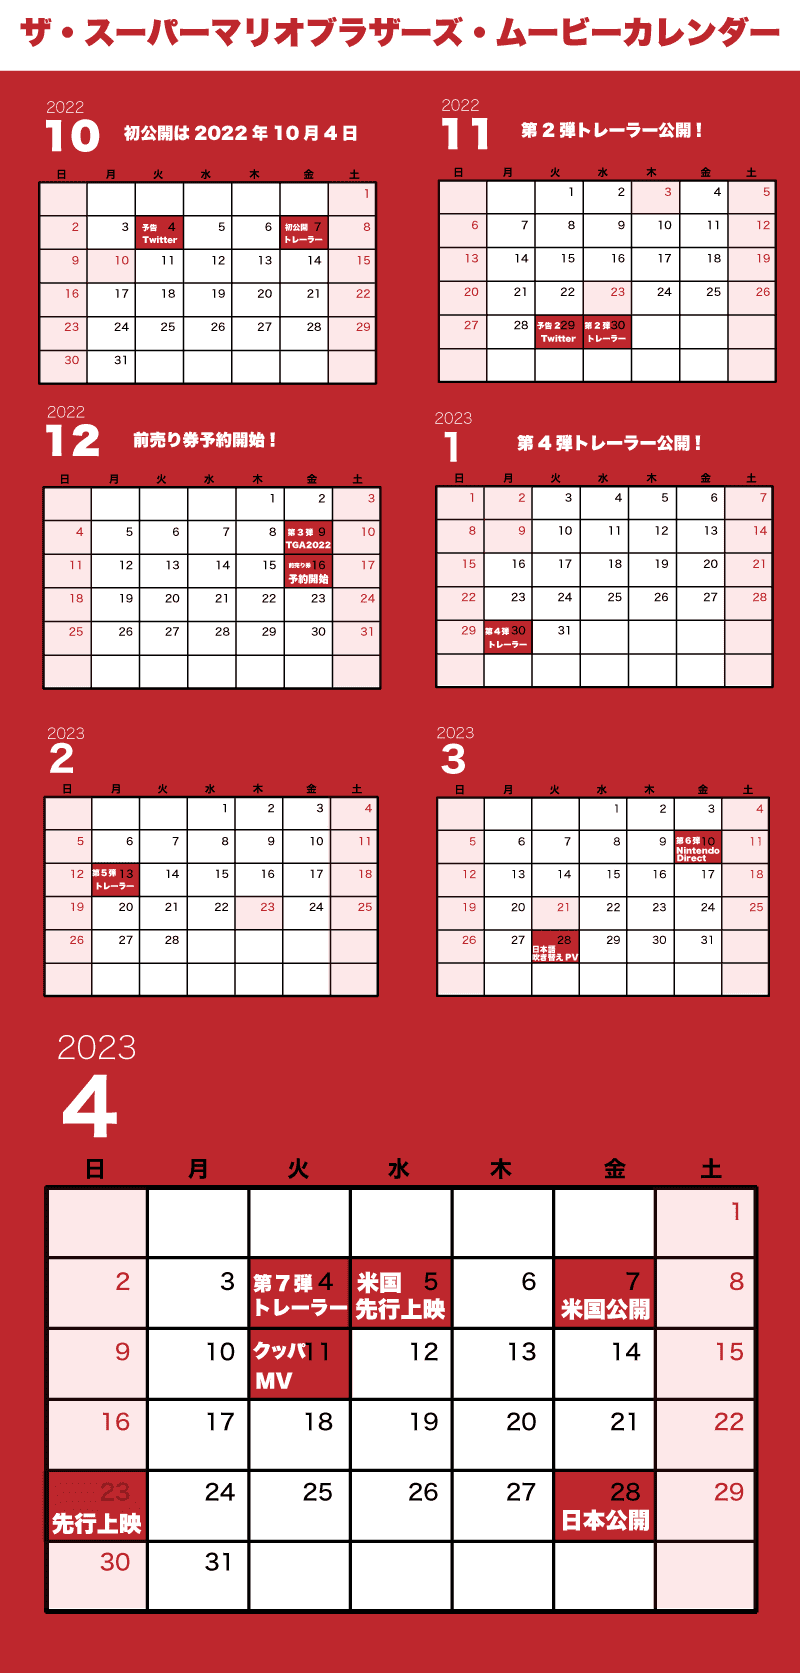 ザ・スーパーマリオブラザーズ・ムービー公開日カレンダー